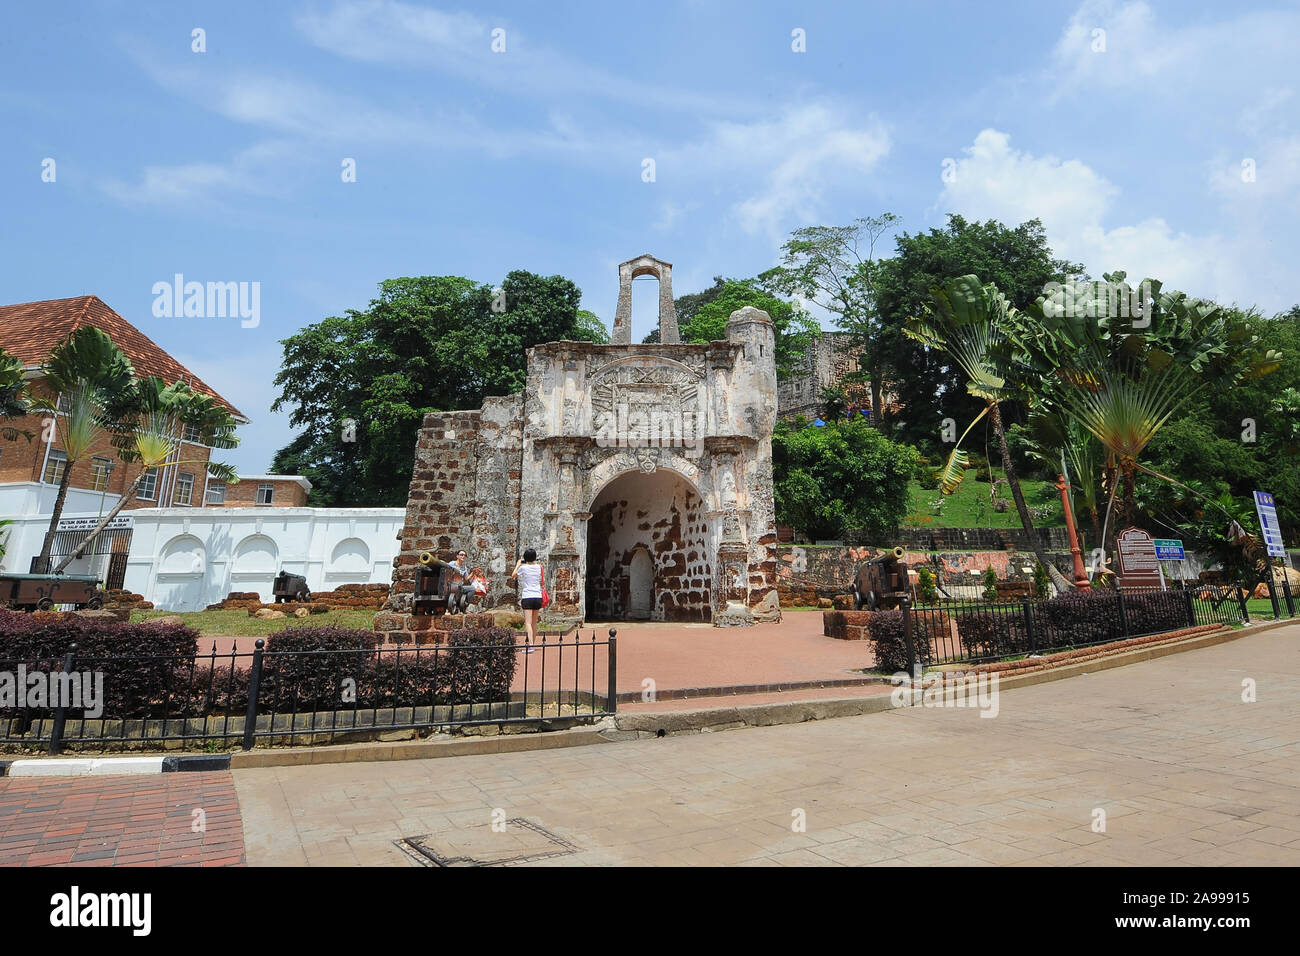 A Famosa, Malacca, Malaysia. Stock Photo